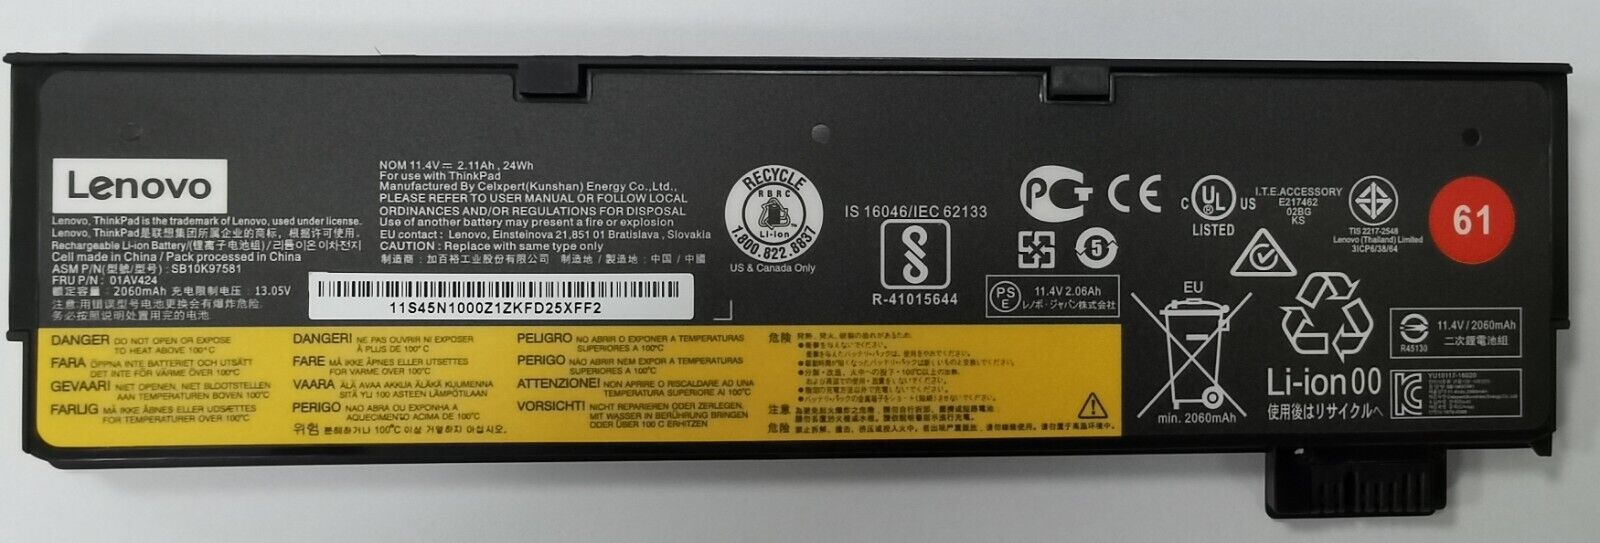 61 Genuine 01AV422 01AV423 01AV424 Battery for Lenovo ThinkPad T470 T480 series